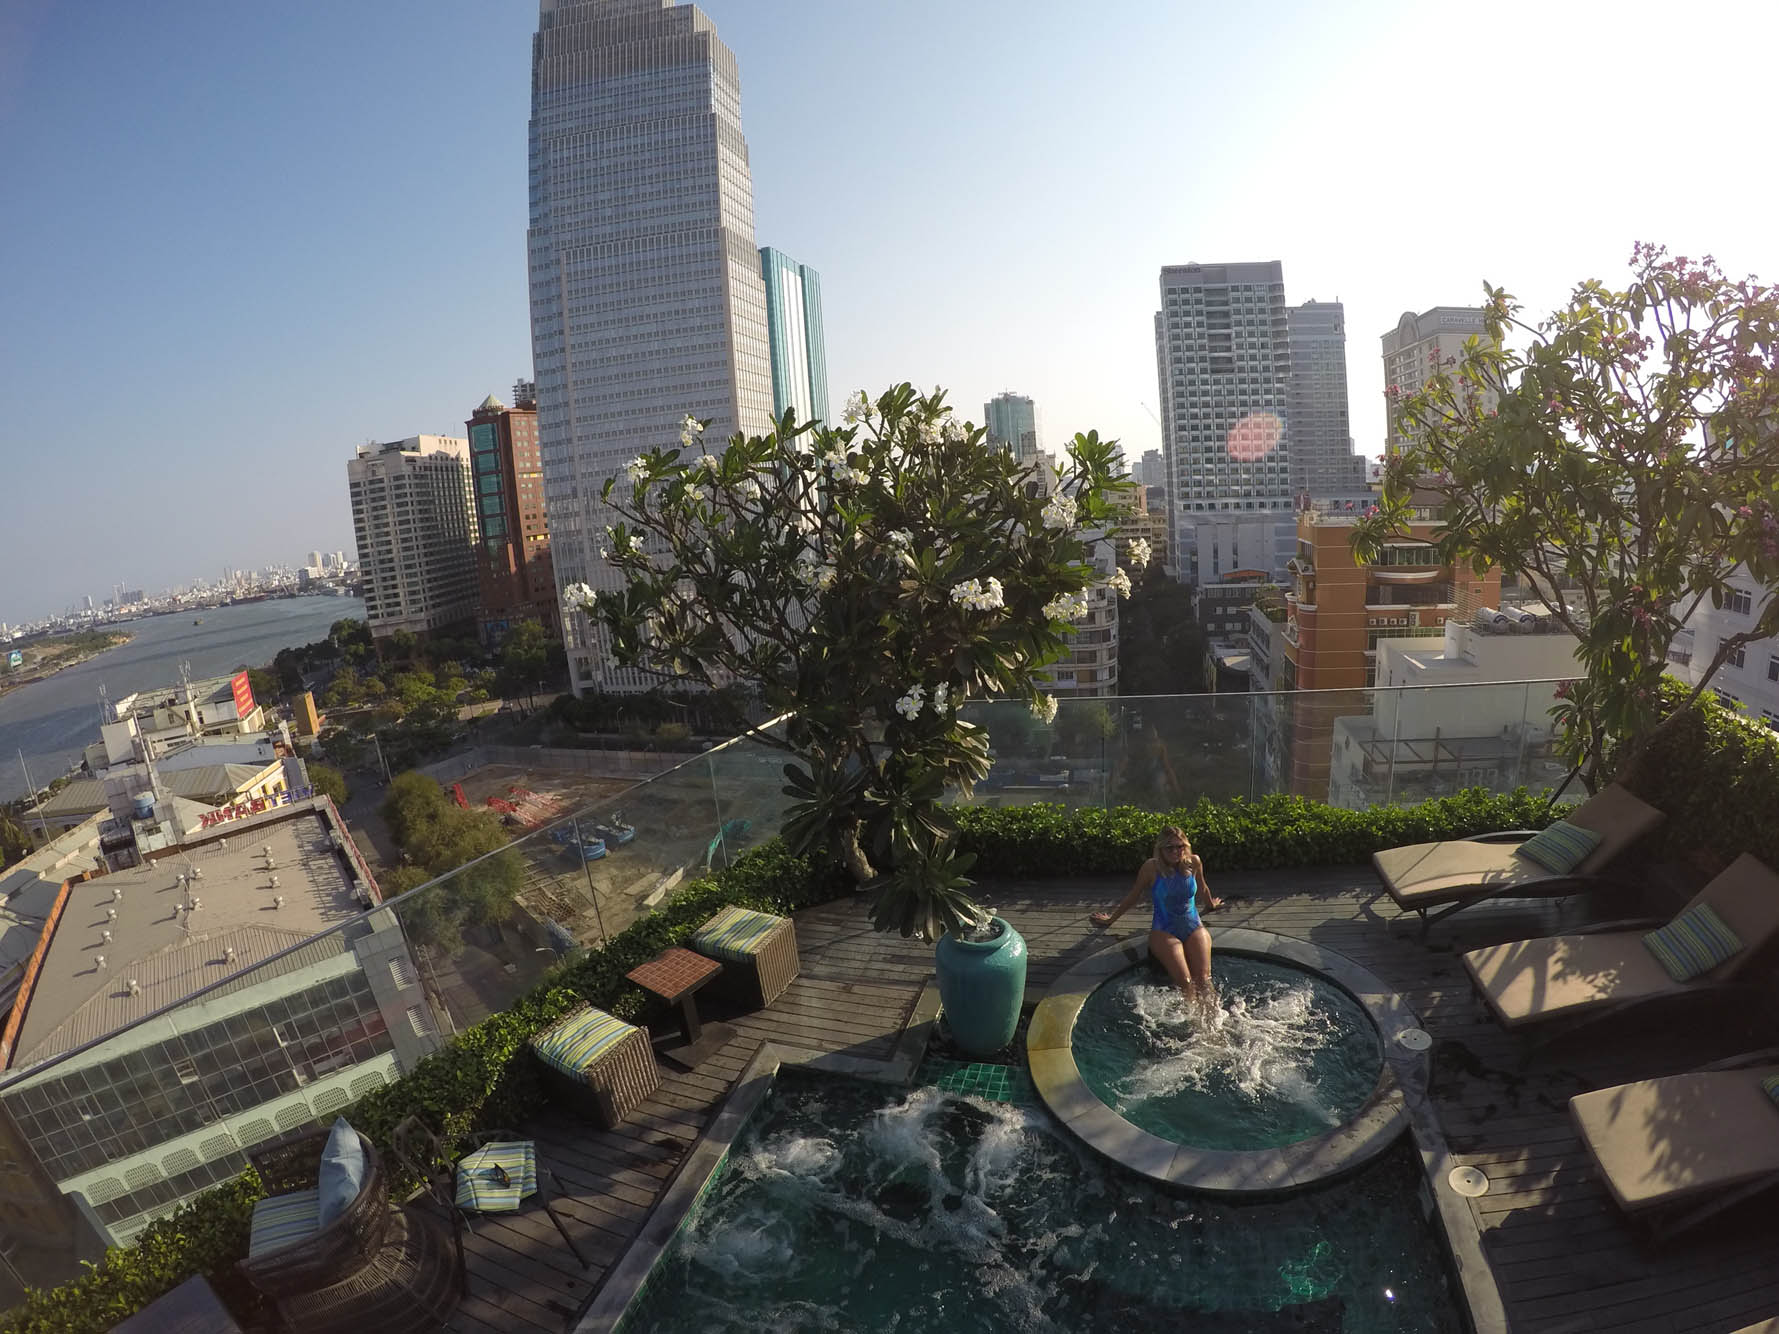 Piscina no rooftop do Silverland Jolie Hotel & Spa, no Distrito 1 de Ho Chi Minh City (Saigon)